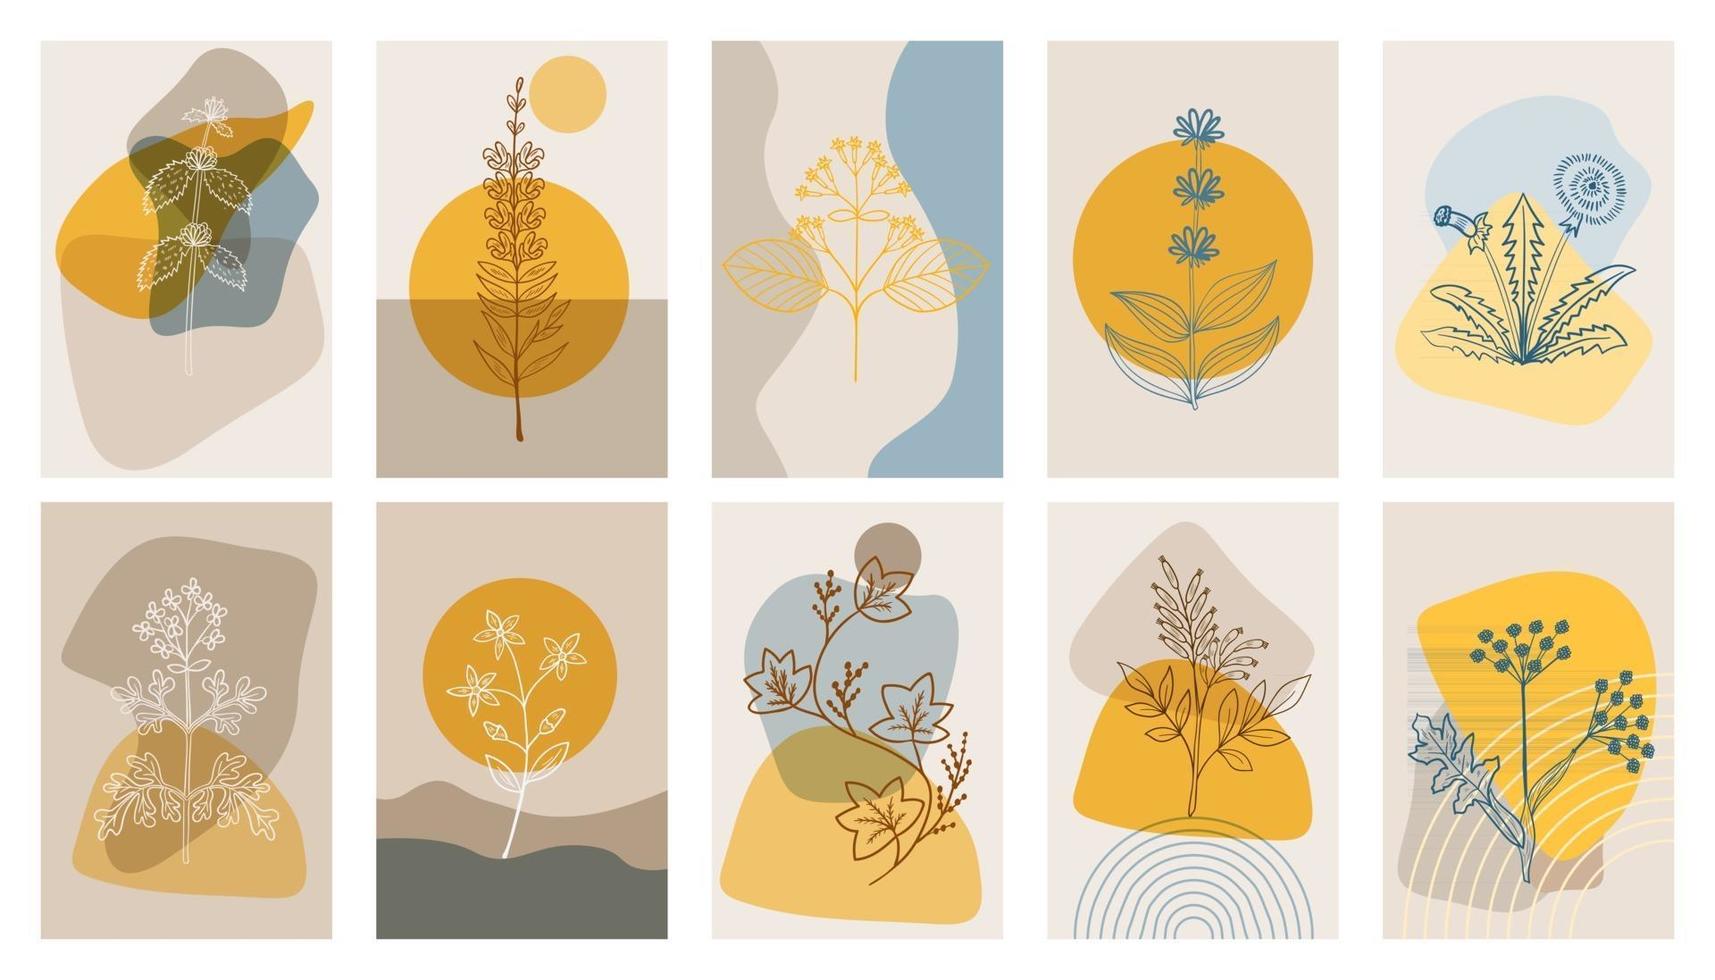 abstrakta affischer med bittra örter, uppsättning. abstrakta geometriska element och blommor, blad och bär vektor